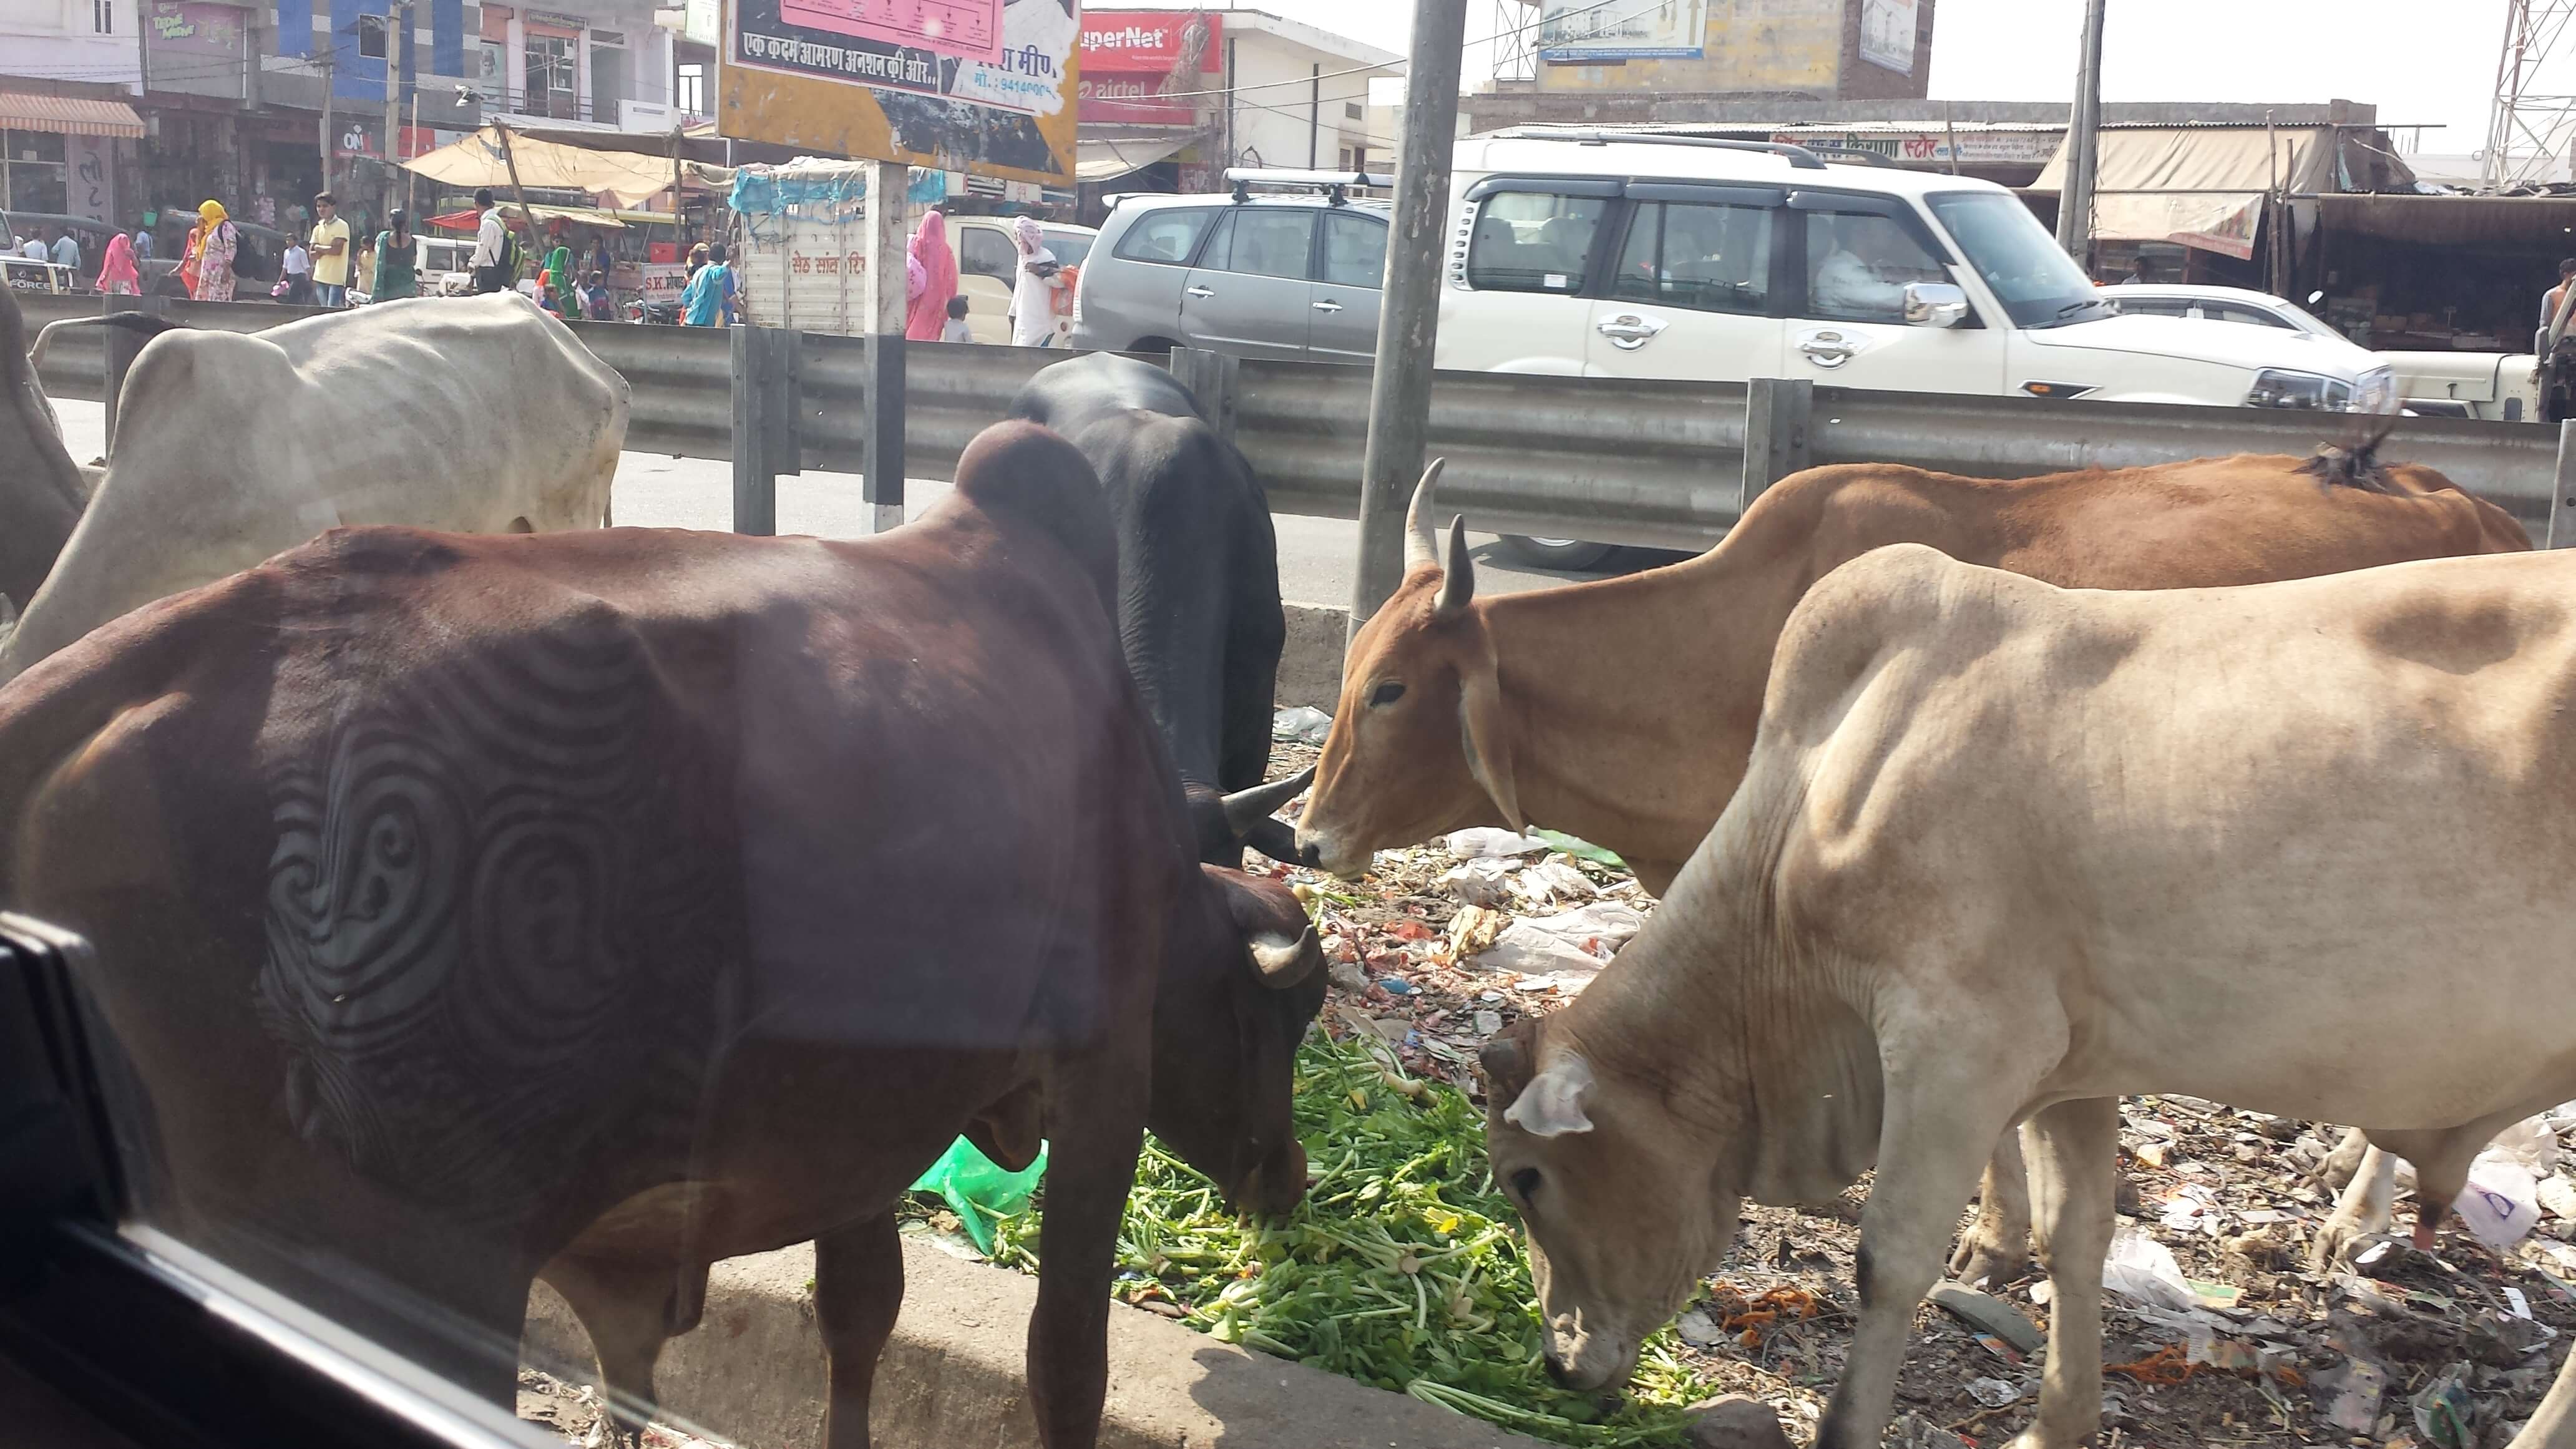 Kühe werden angeblichen durch Abgase high und bleiben deshalb gern in der Mitte der Straße